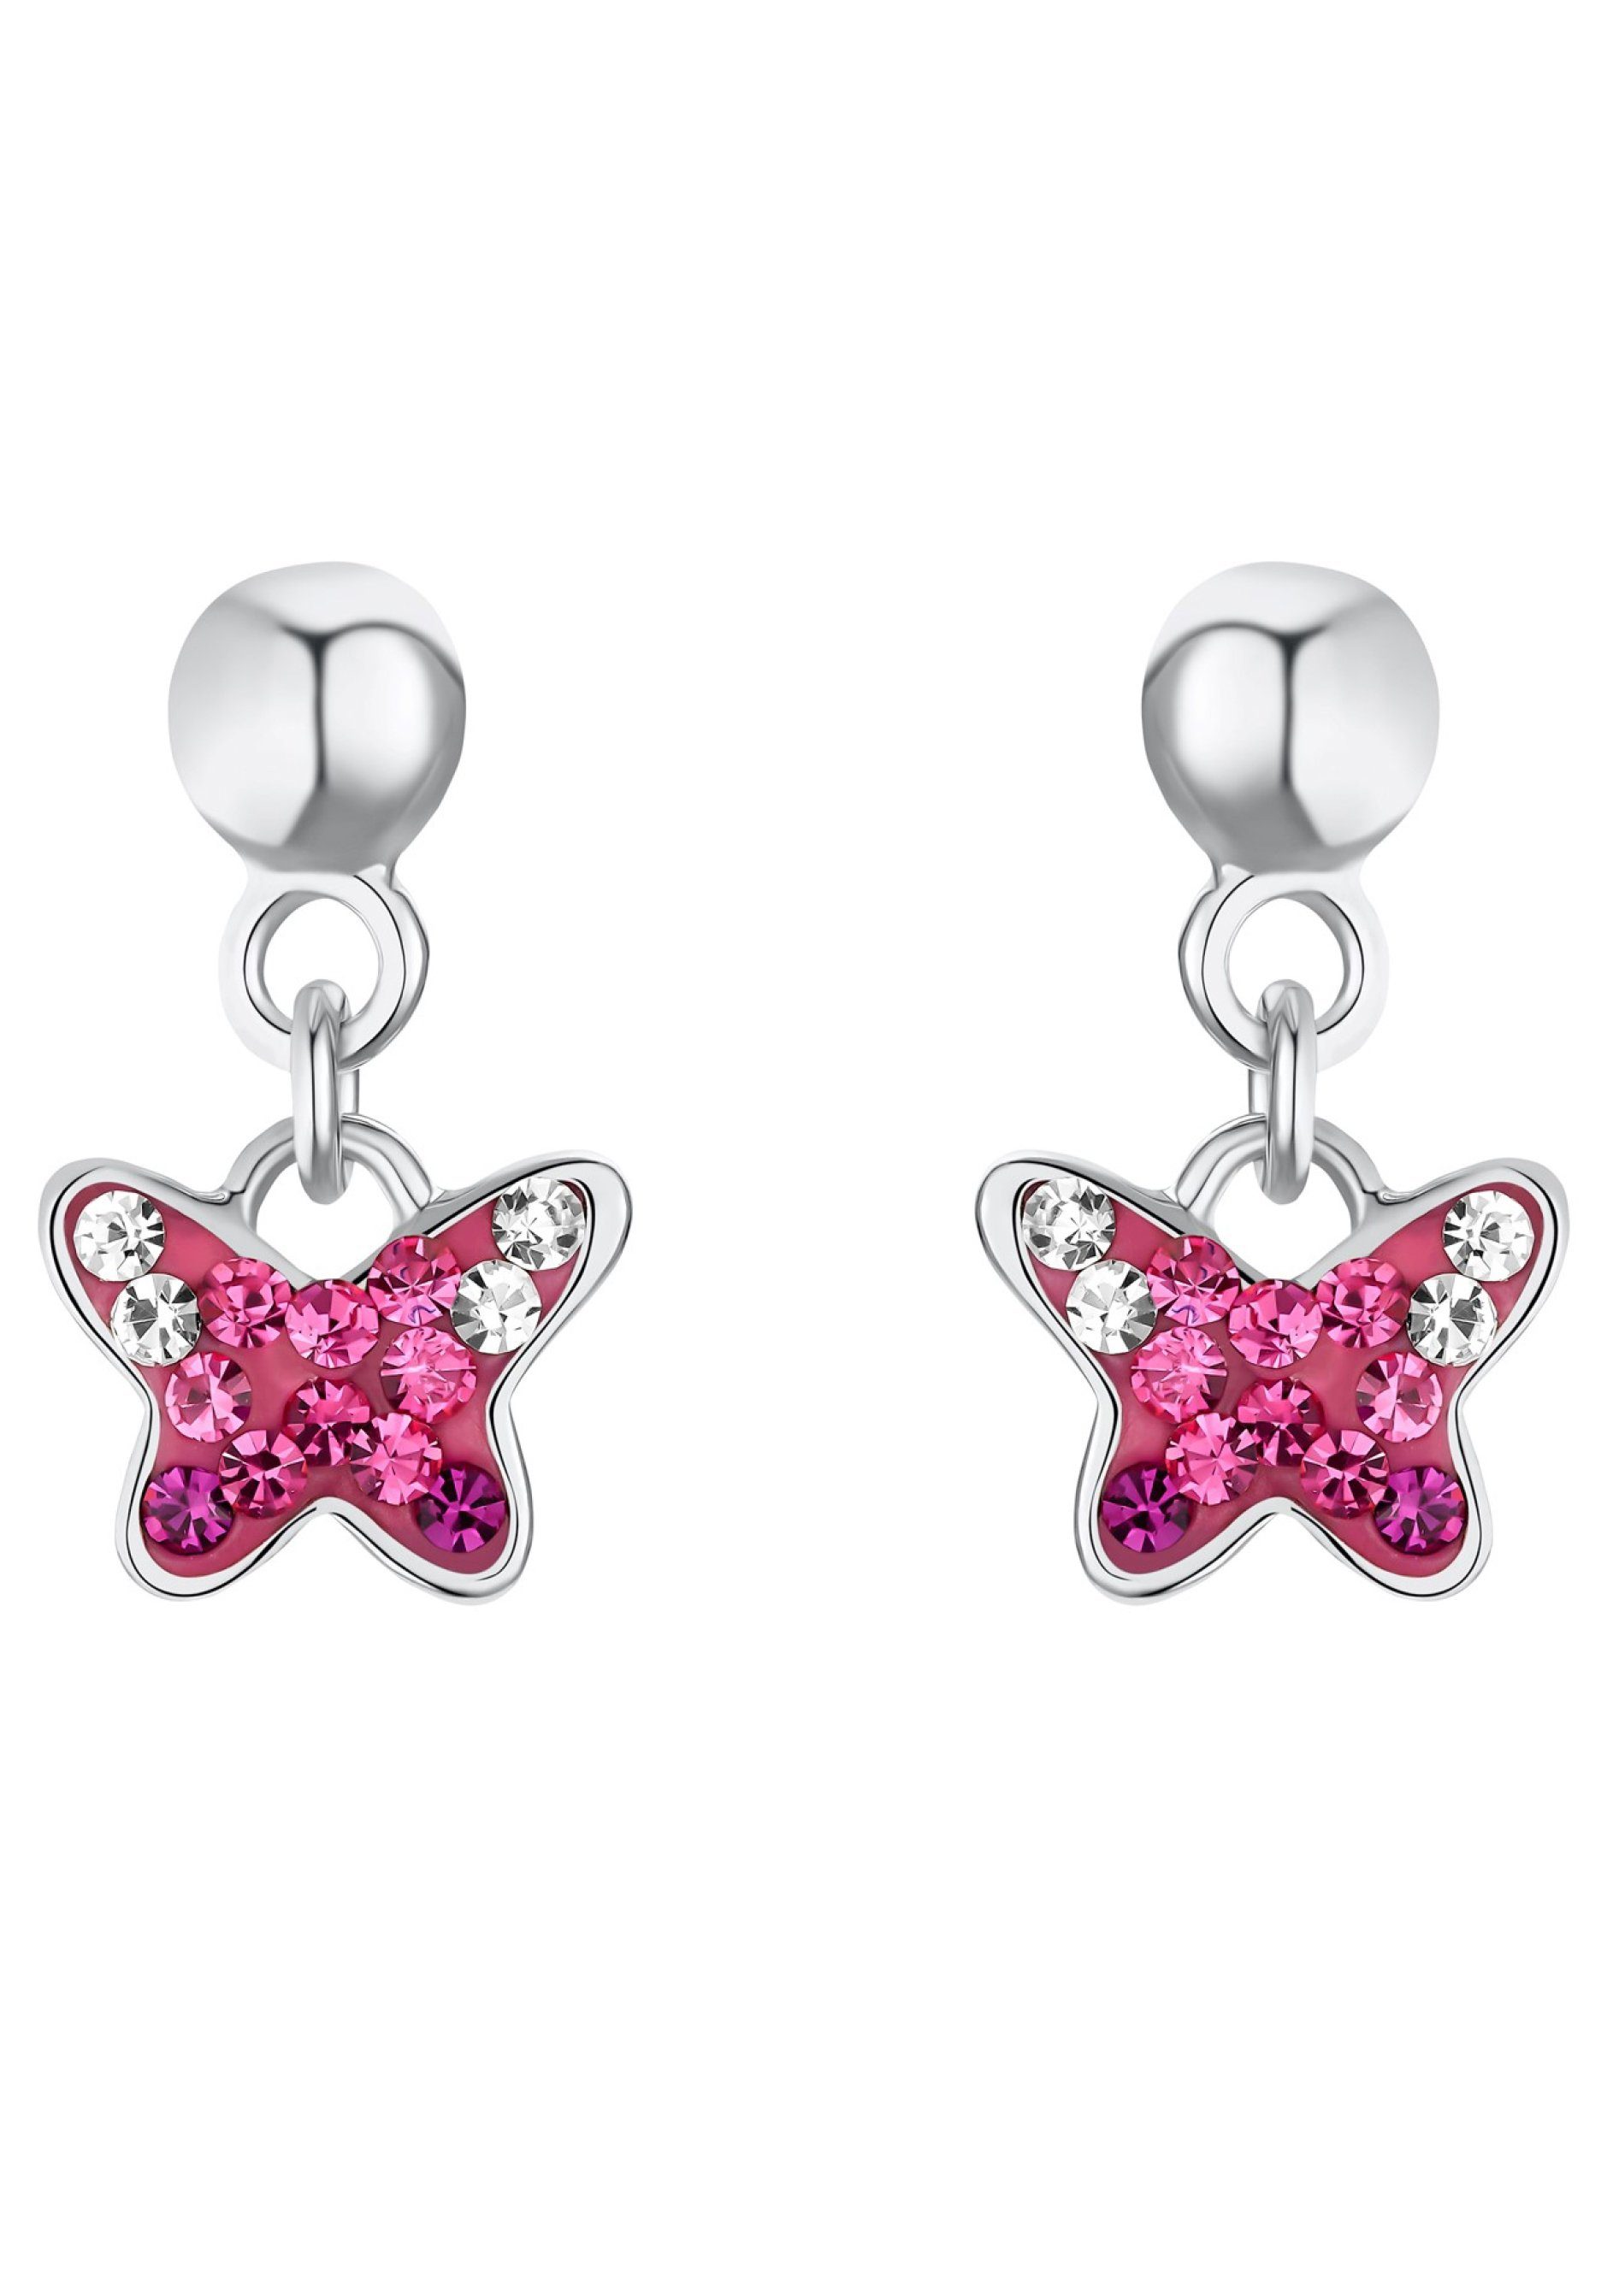 Prinzessin Lillifee Paar Ohrhänger Schmetterling, 2033997, mit Preciosa  Crystal, Perfektes Geschenk z.B. zu Weihnachten, zum Geburtstag oder zur  Einschulung